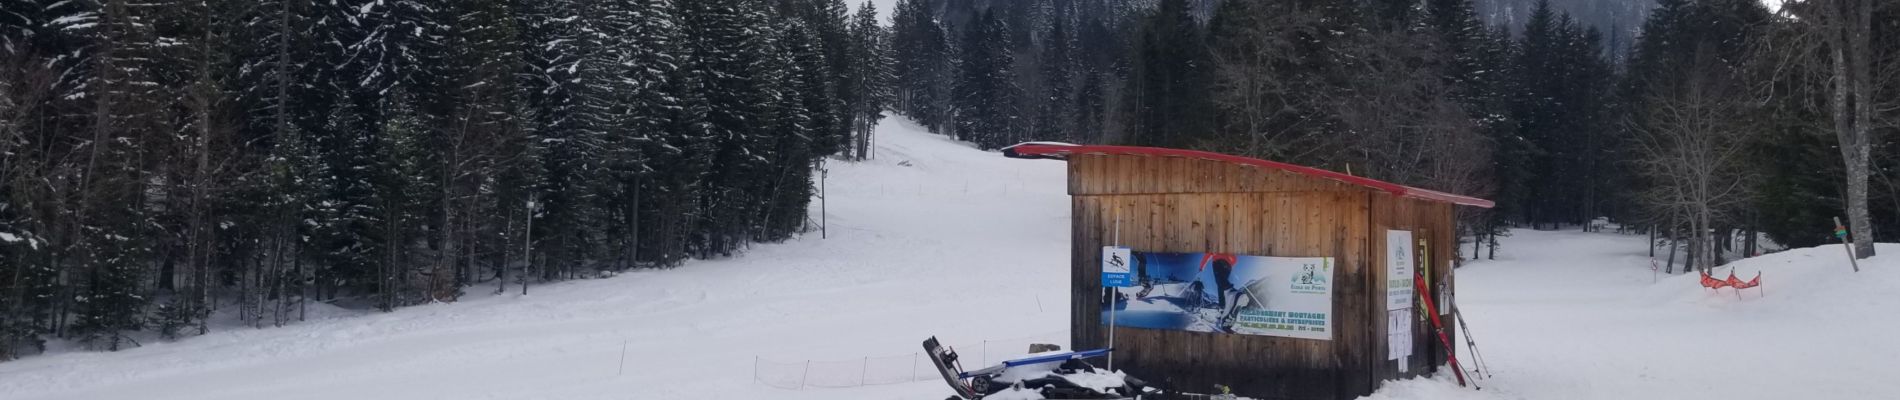 Randonnée Ski de fond Sarcenas - Ski de fond - col de porte - Photo